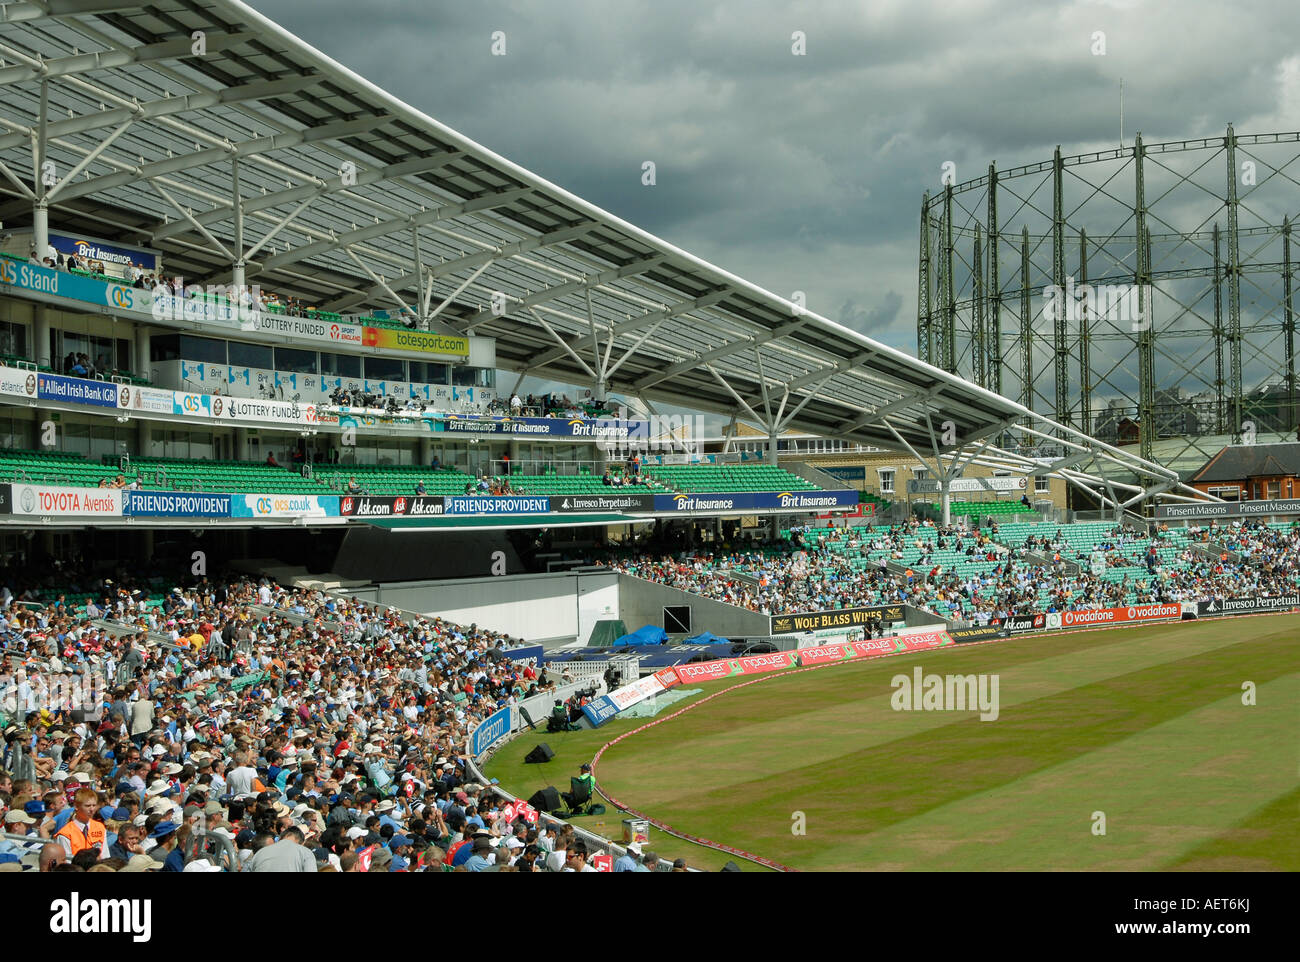 Der OCS-Stand auf dem Oval Cricket Ground, London während einer England im Vergleich zu Indien Testspiel Stockfoto